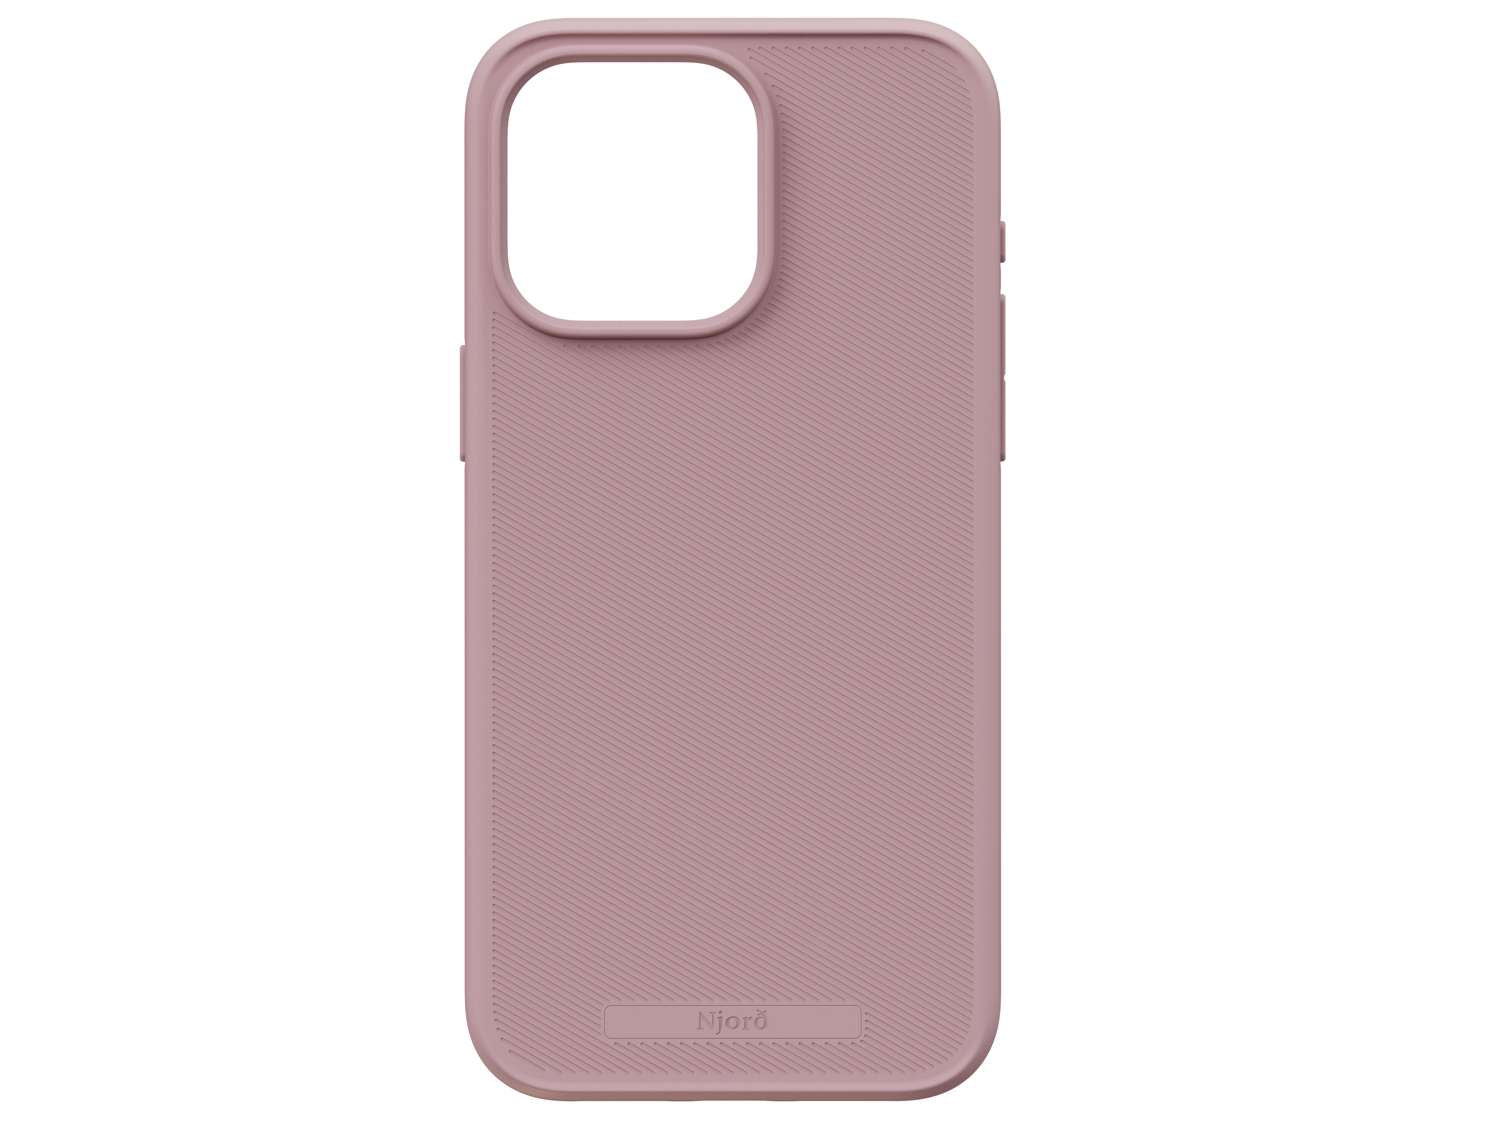 Slim Case, MagSafe - Pink Blush